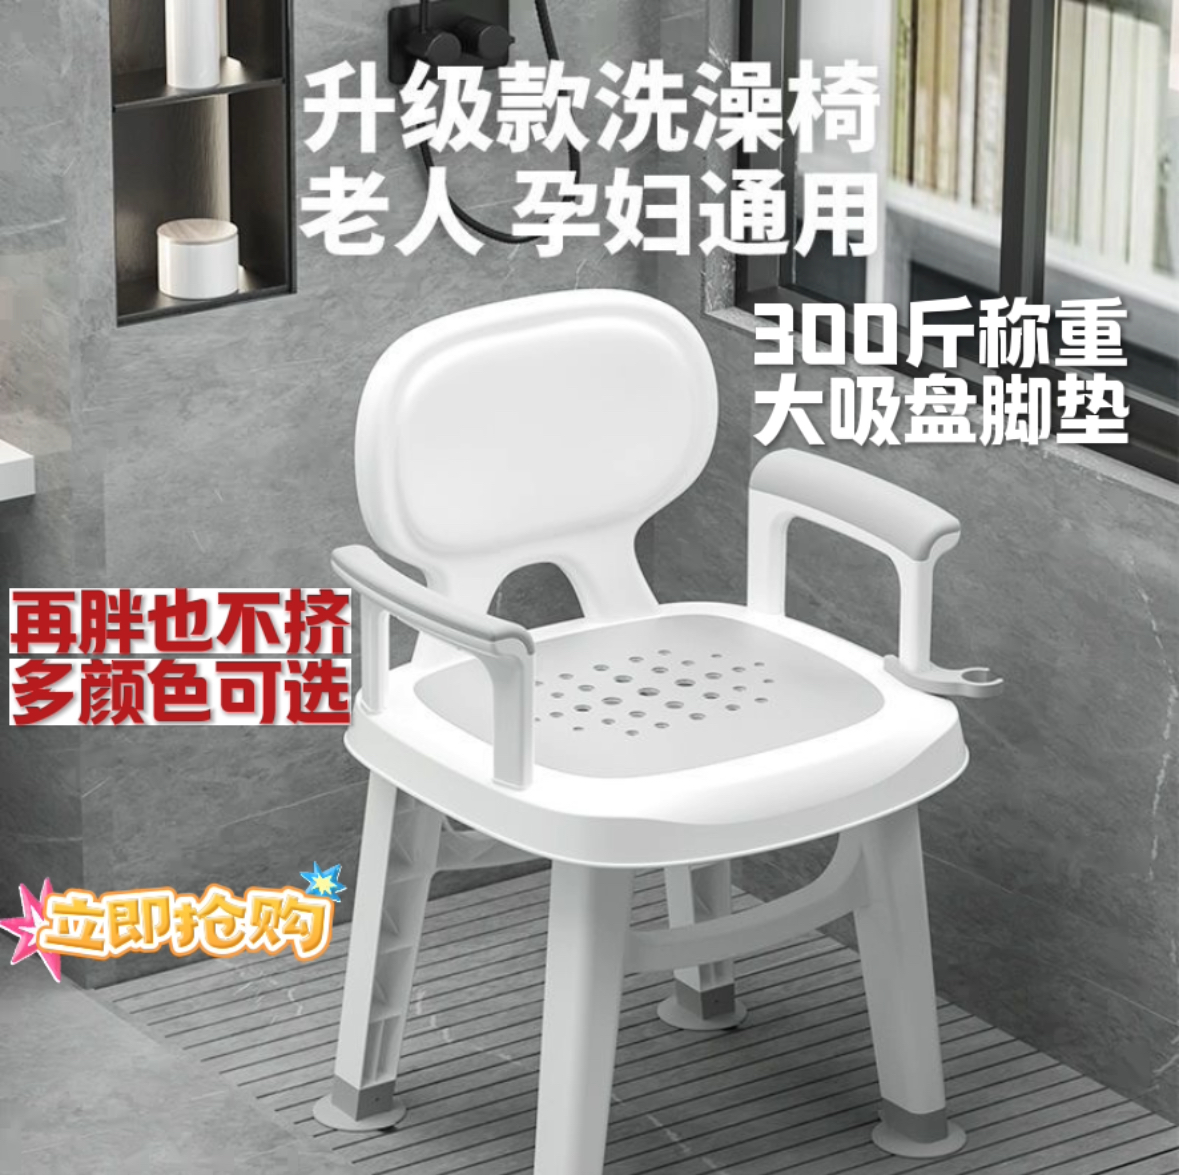 老人洗澡专用椅孕妇椅浴室凳沐浴椅偏残疾人卫生间洗澡凳冲凉椅子